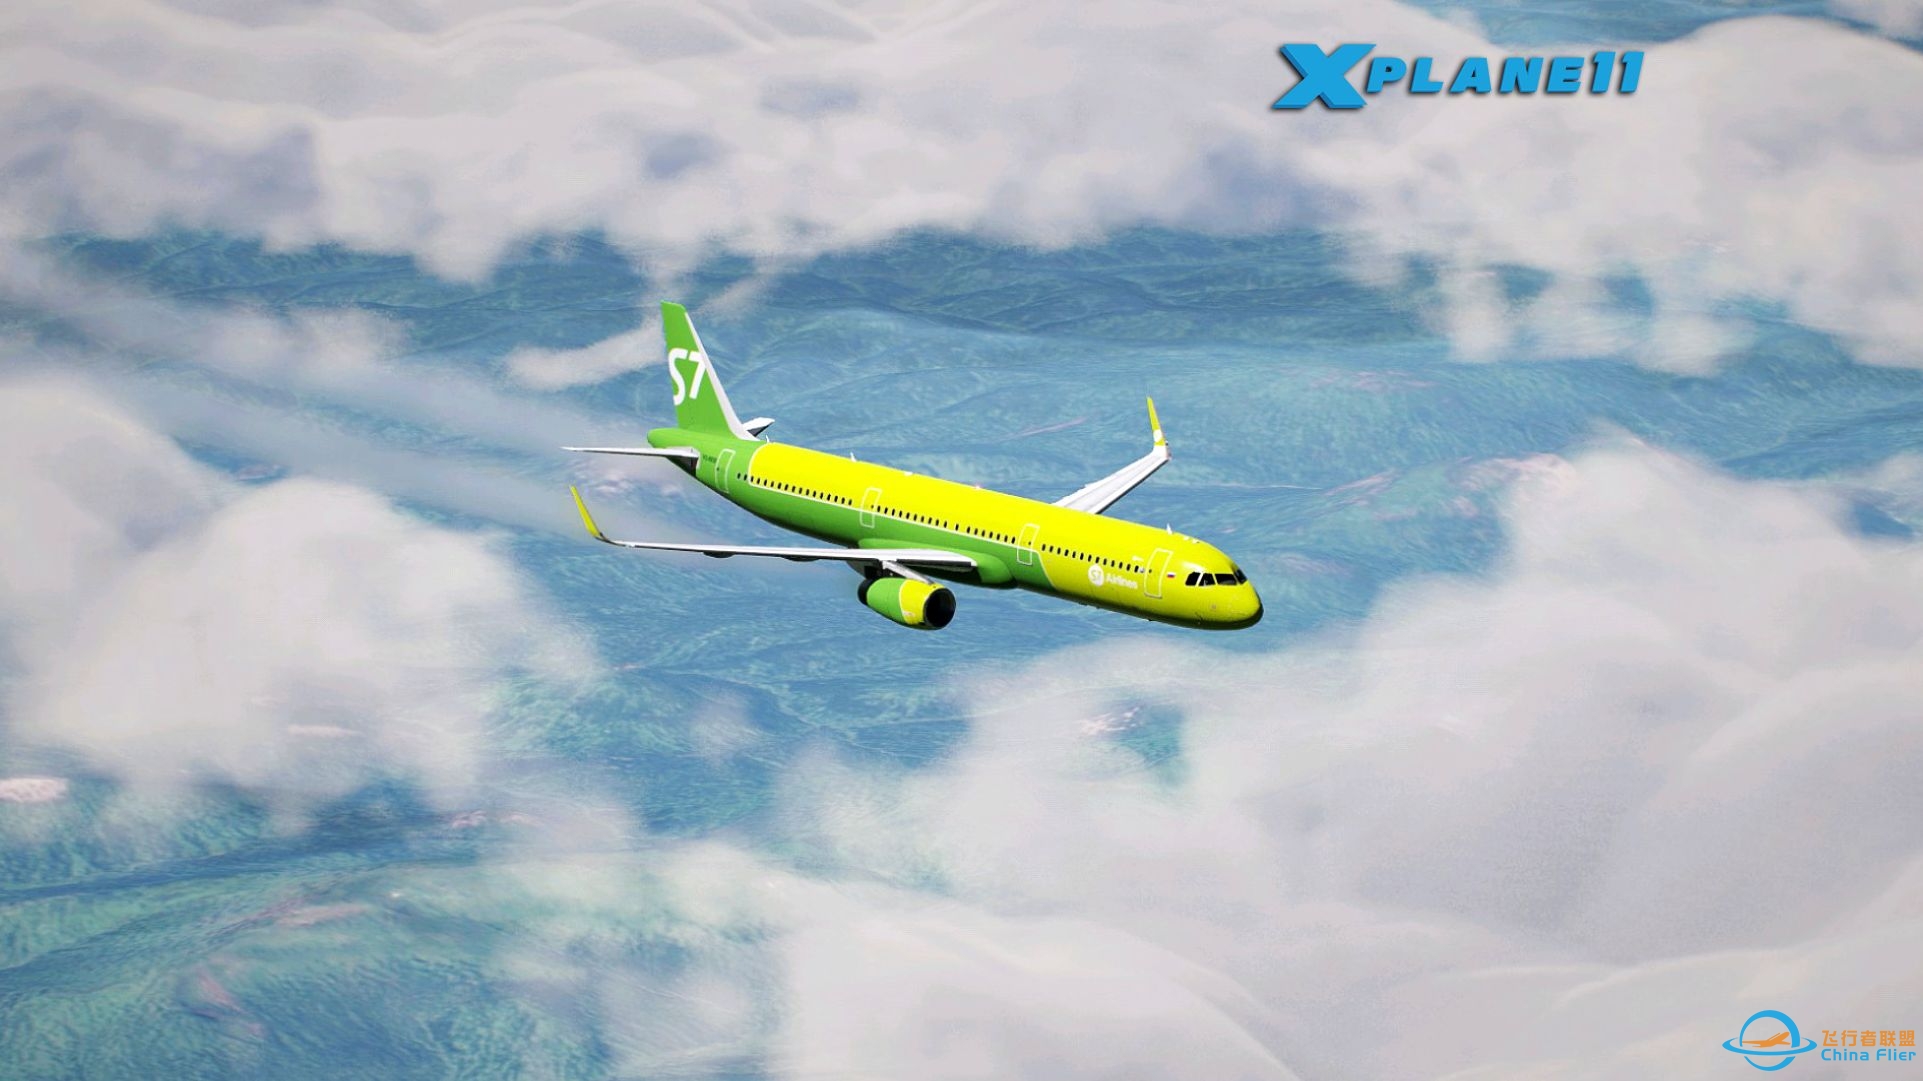 UNNT→UIII 西伯利亚绿皮机 A321 航线飞行 X-PLANE11-1874 